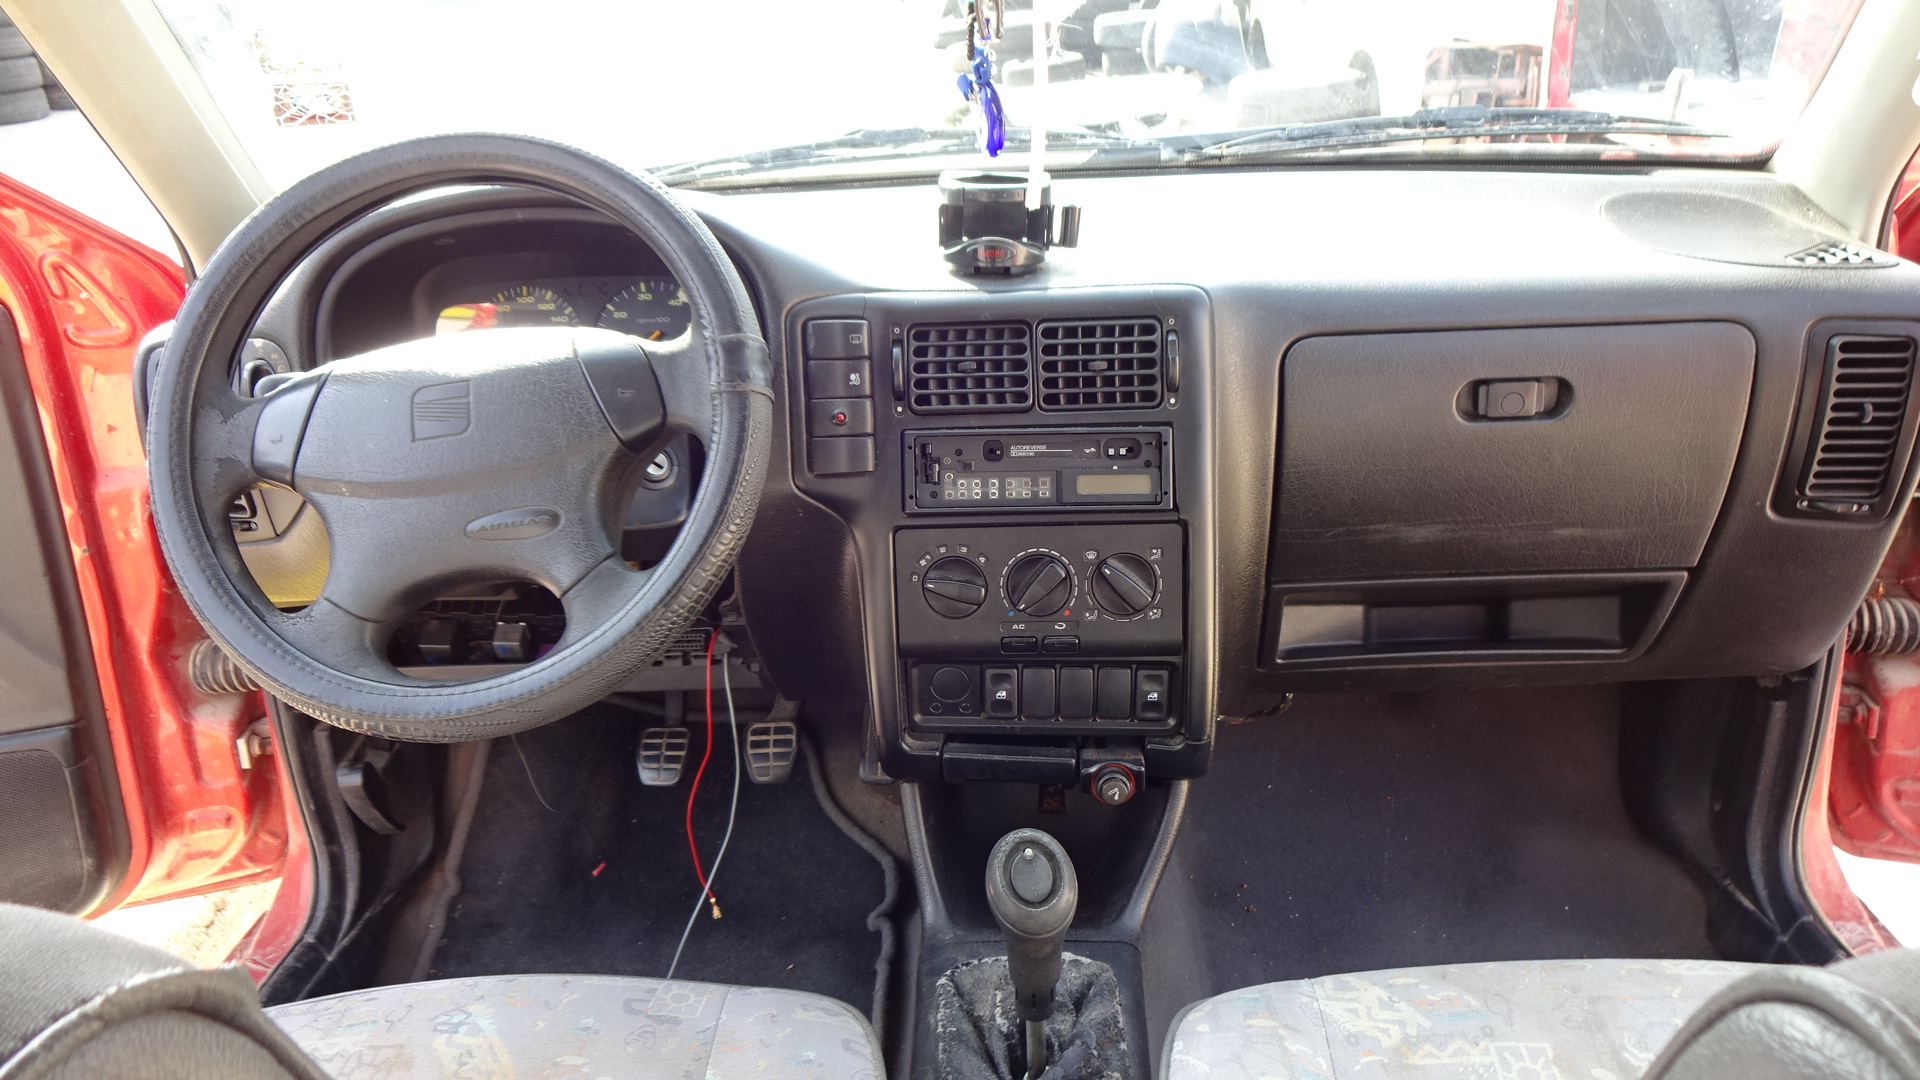 Καλοριφέρ Σετ Κομπλέ (Εβαπορέτα) Seat Ibiza ’97 Προσφορά.